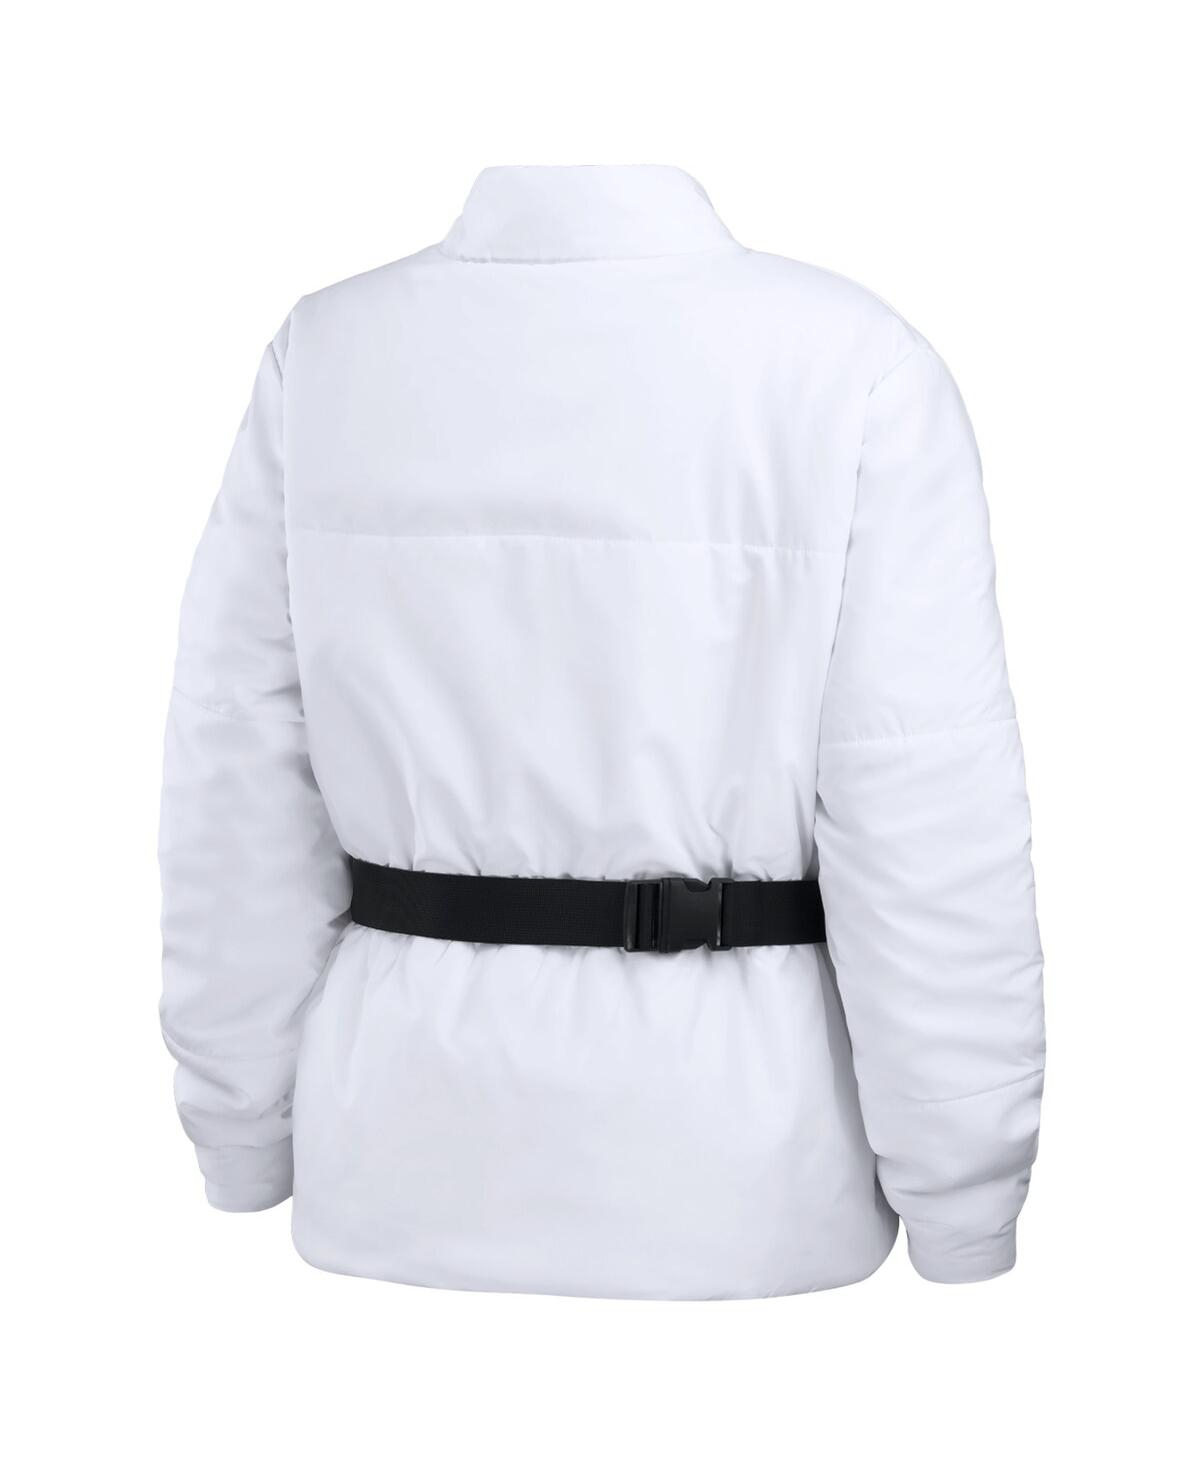 Shop Wear By Erin Andrews Women's  White Minnesota Vikings Packaway Full-zip Puffer Jacket